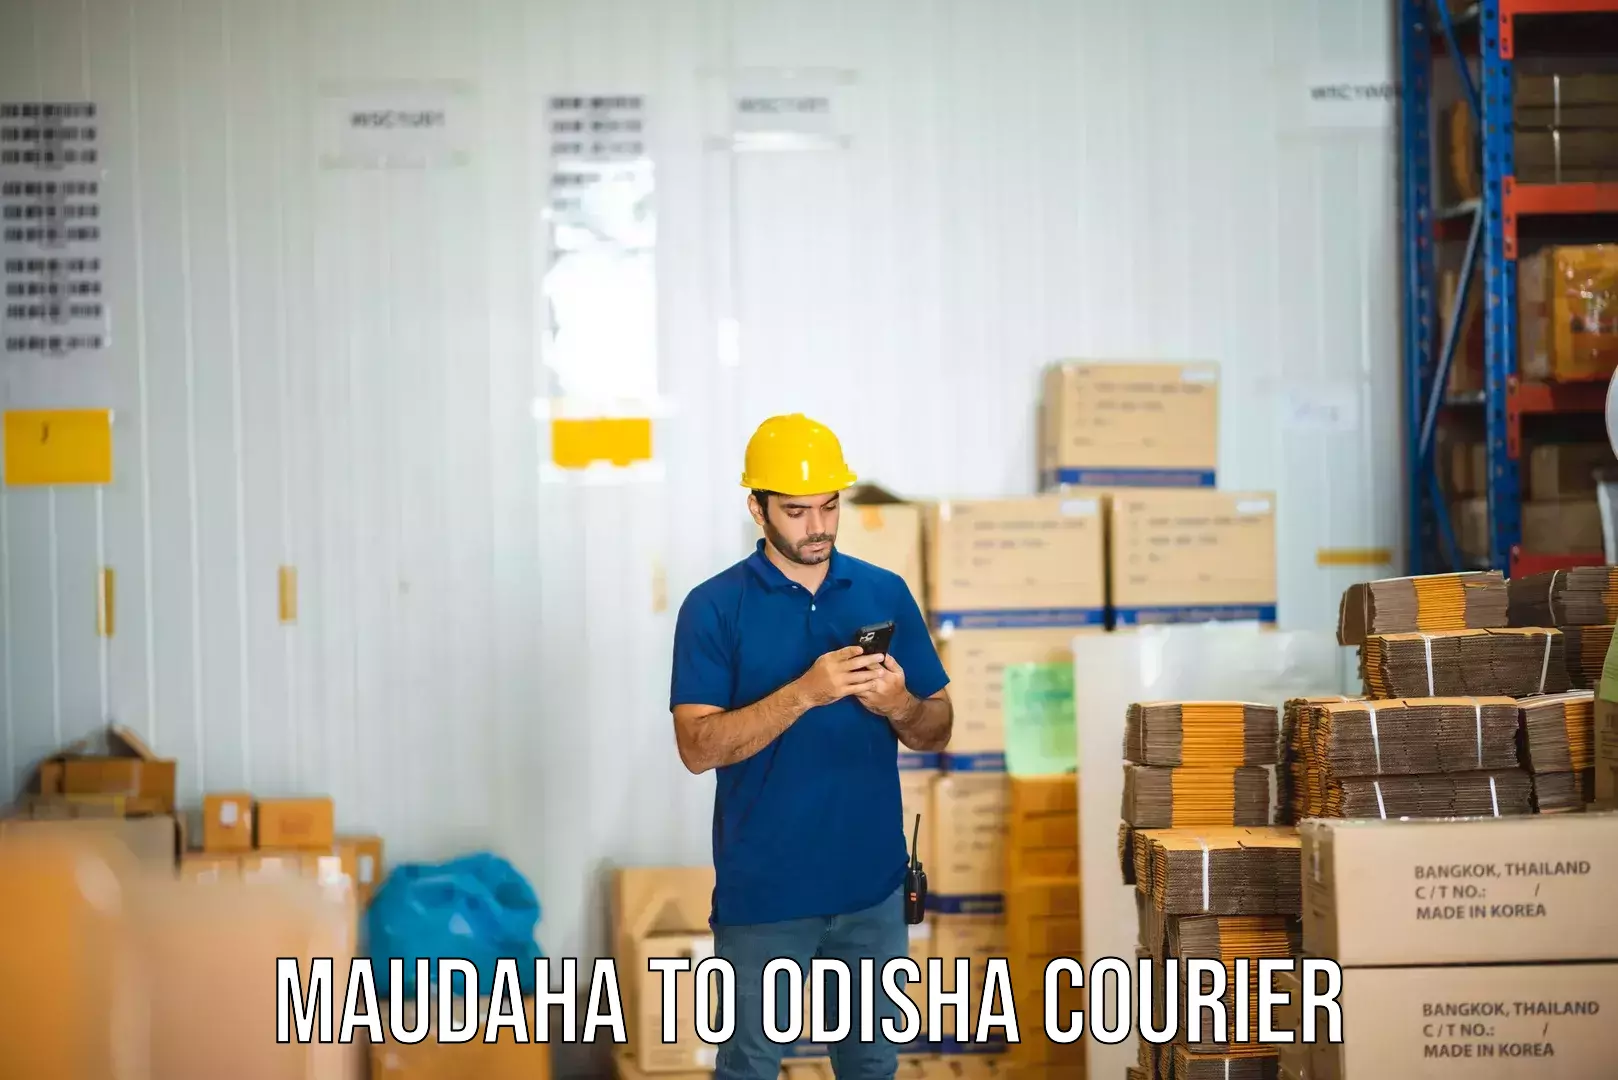 Business delivery service Maudaha to Balinga